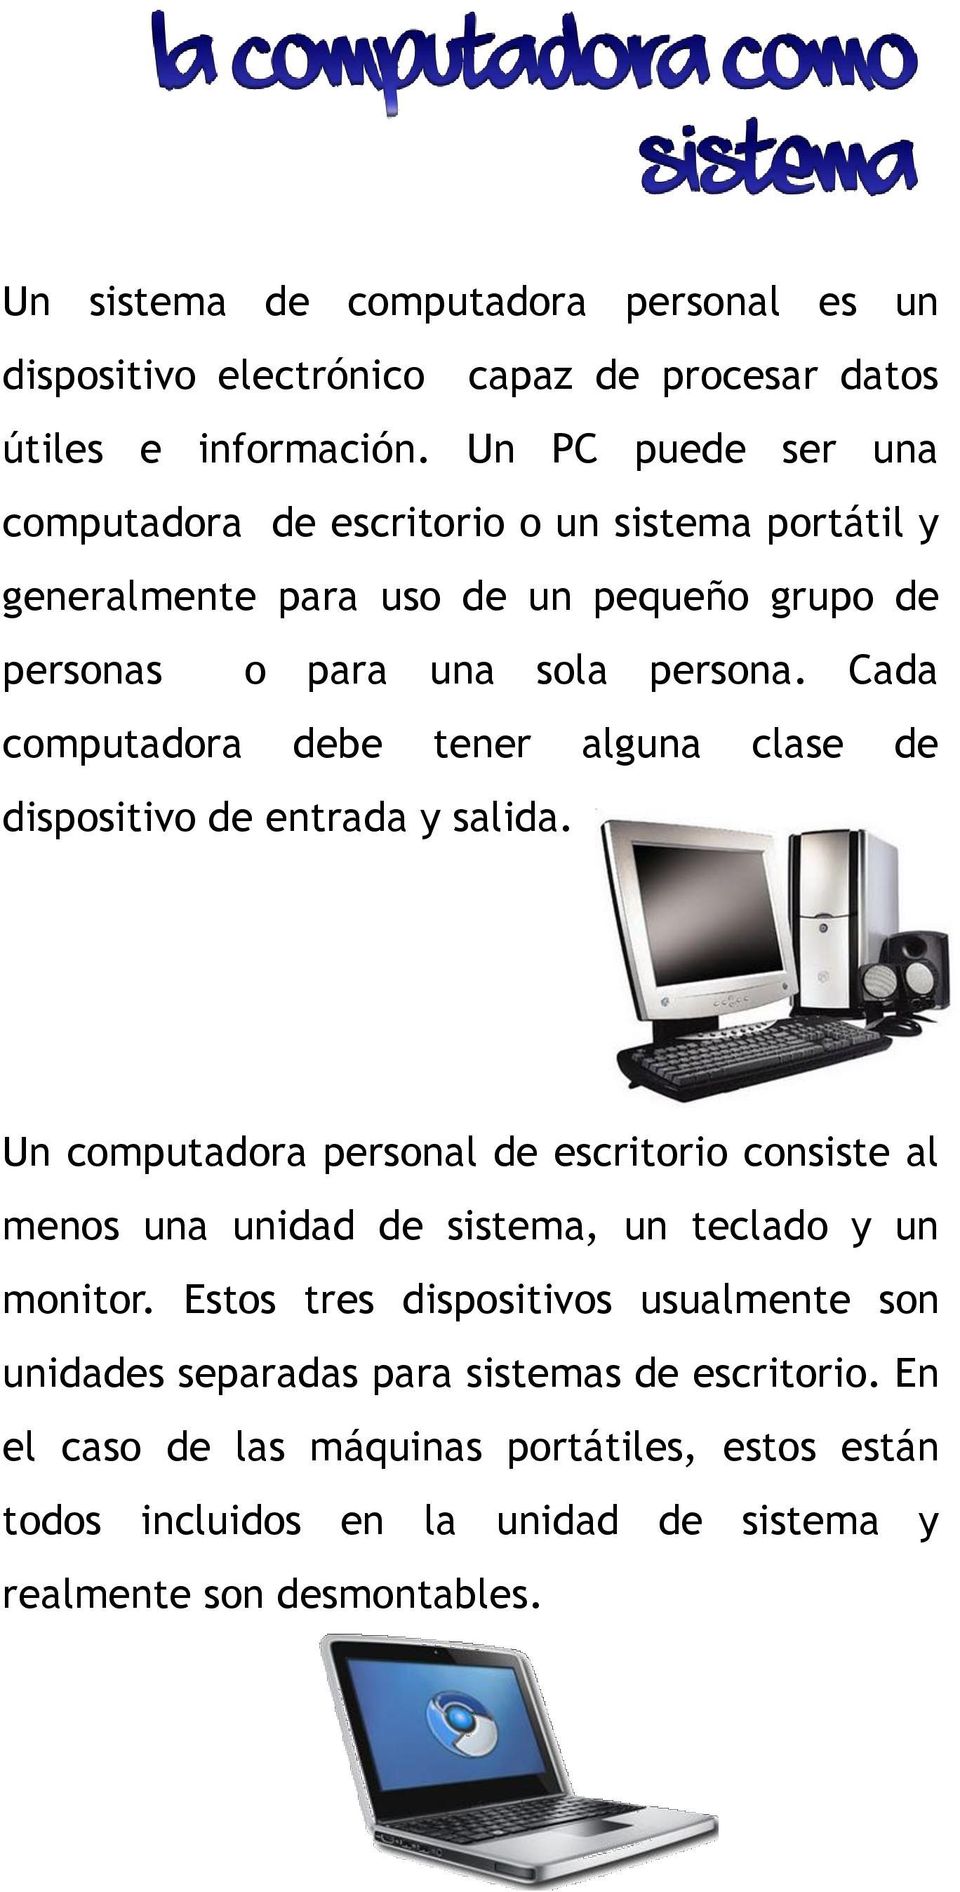 Cada computadora debe tener alguna clase de dispositivo de entrada y salida.